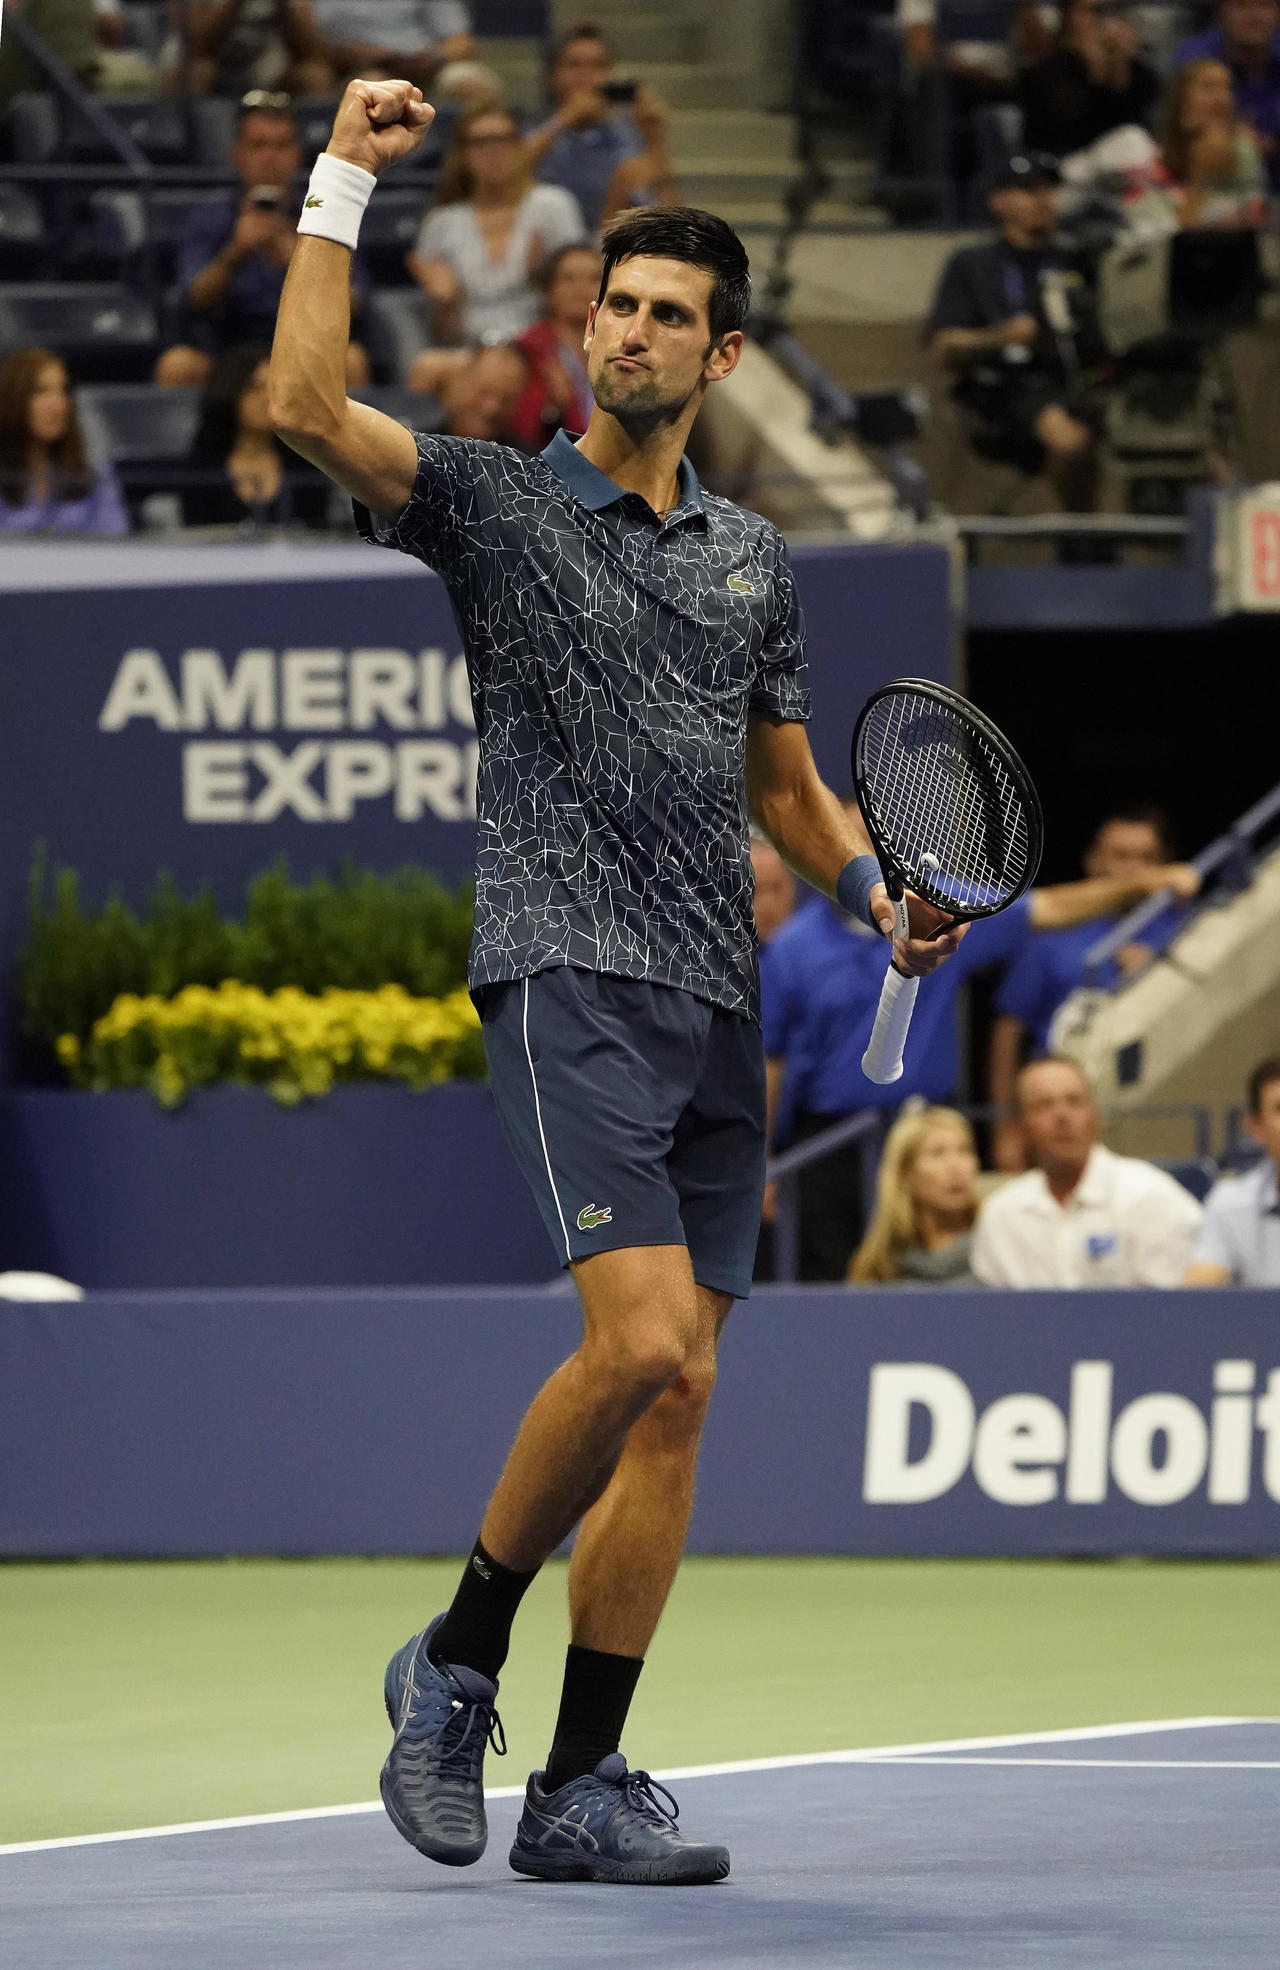 El serbio Novak Djokovic, sexto cabeza de serie, y dos veces ganador del Abierto de Estados Unidos, derrotó al francés Richard Gasquet.